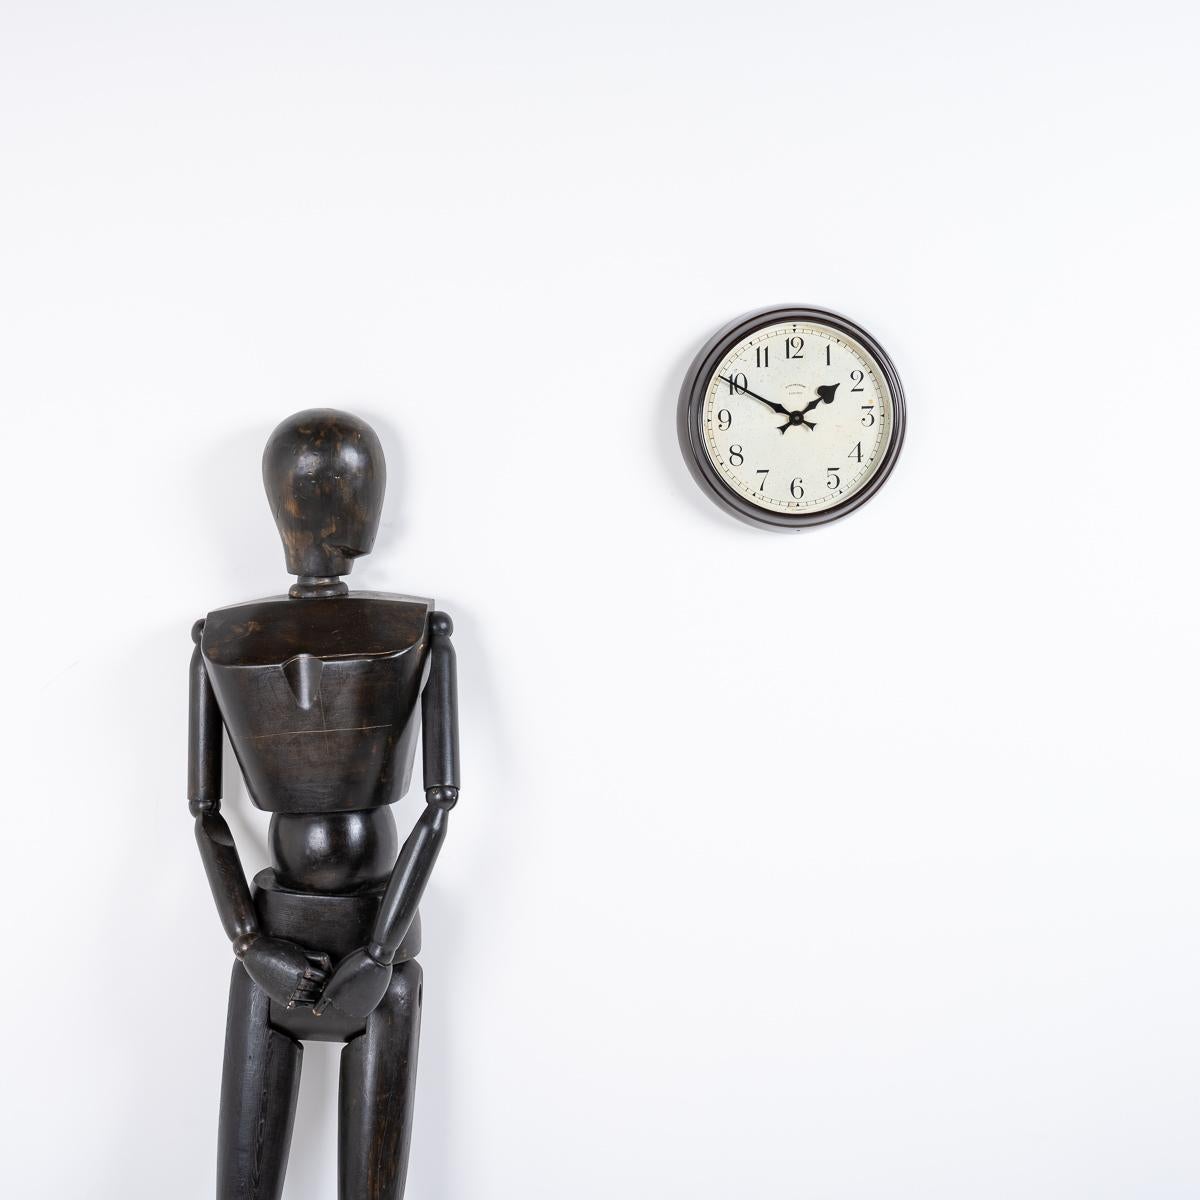 WANDUHR MIT BAKELIT-GEHÄUSE VON SYNCHRONOME

Eine atemberaubende  Industrieuhr, hergestellt in England um 1940 von Synchronome.

Synchronome war zu Beginn und in der Mitte des 20. Jahrhunderts der führende Uhrenhersteller, der trotz der starken